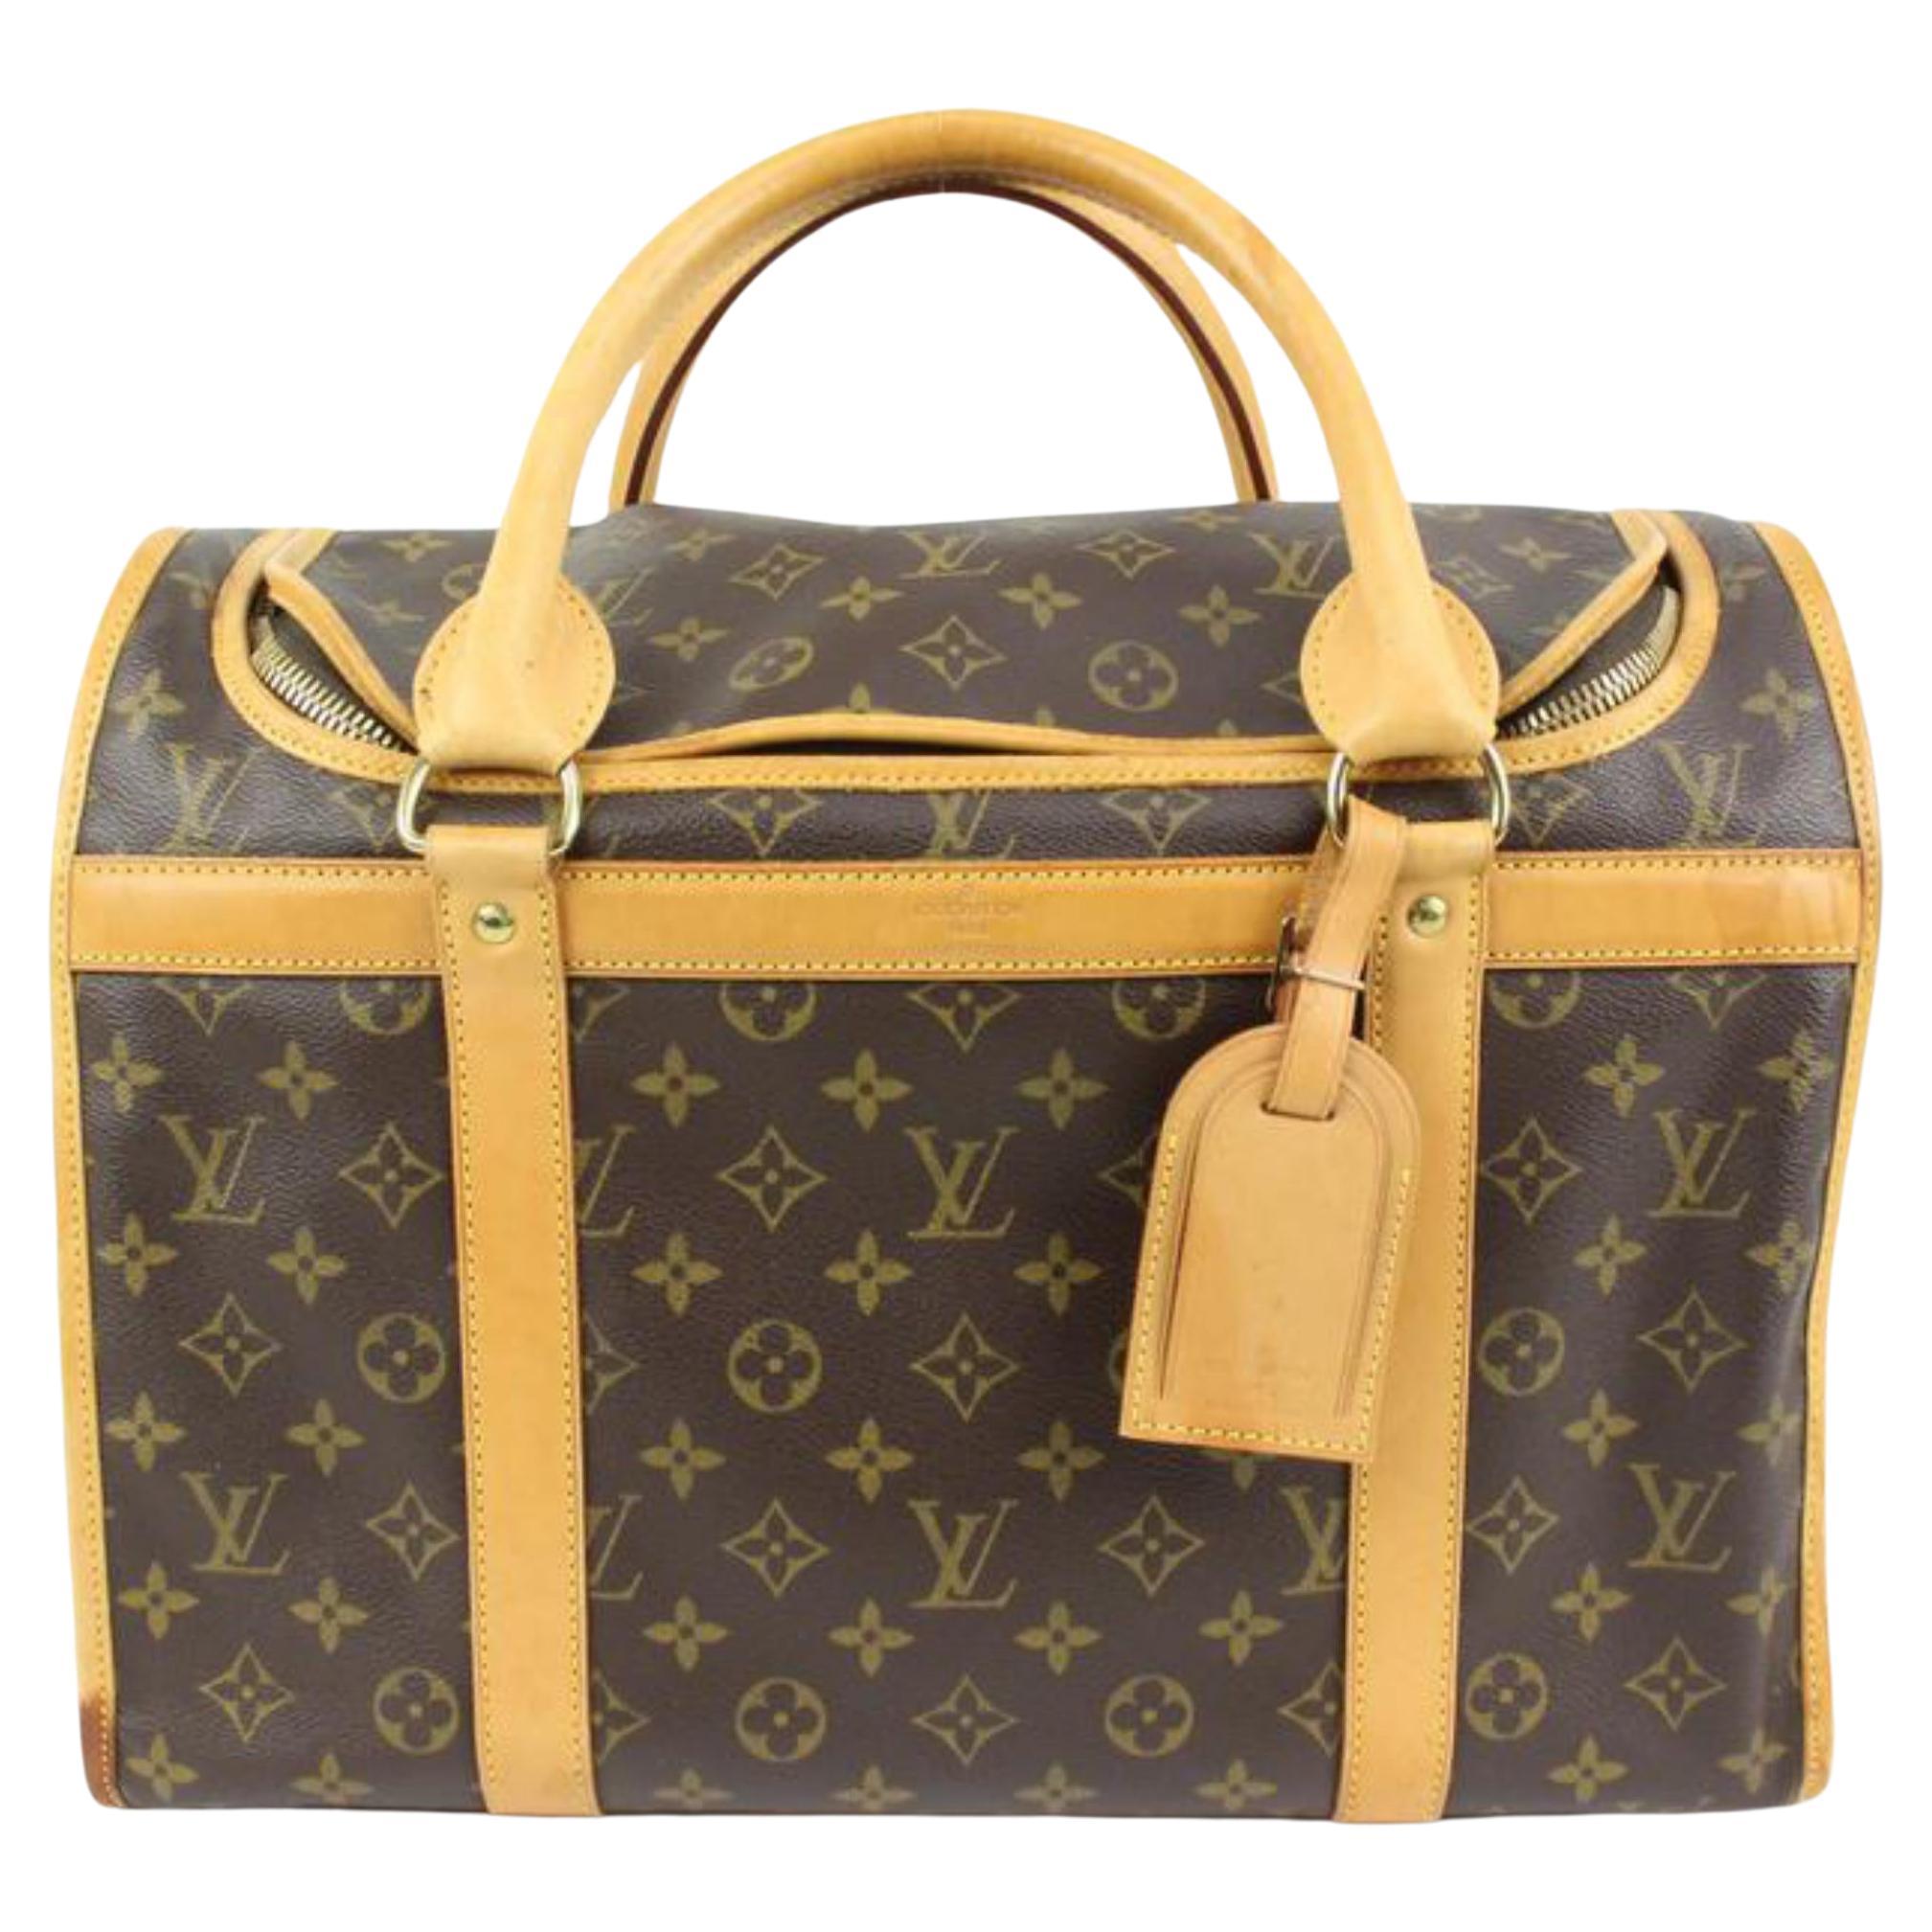 Louis Vuitton Monogram Sac Chien 40 Pet Carrier Dog Bag Travel 93lk323s For Sale